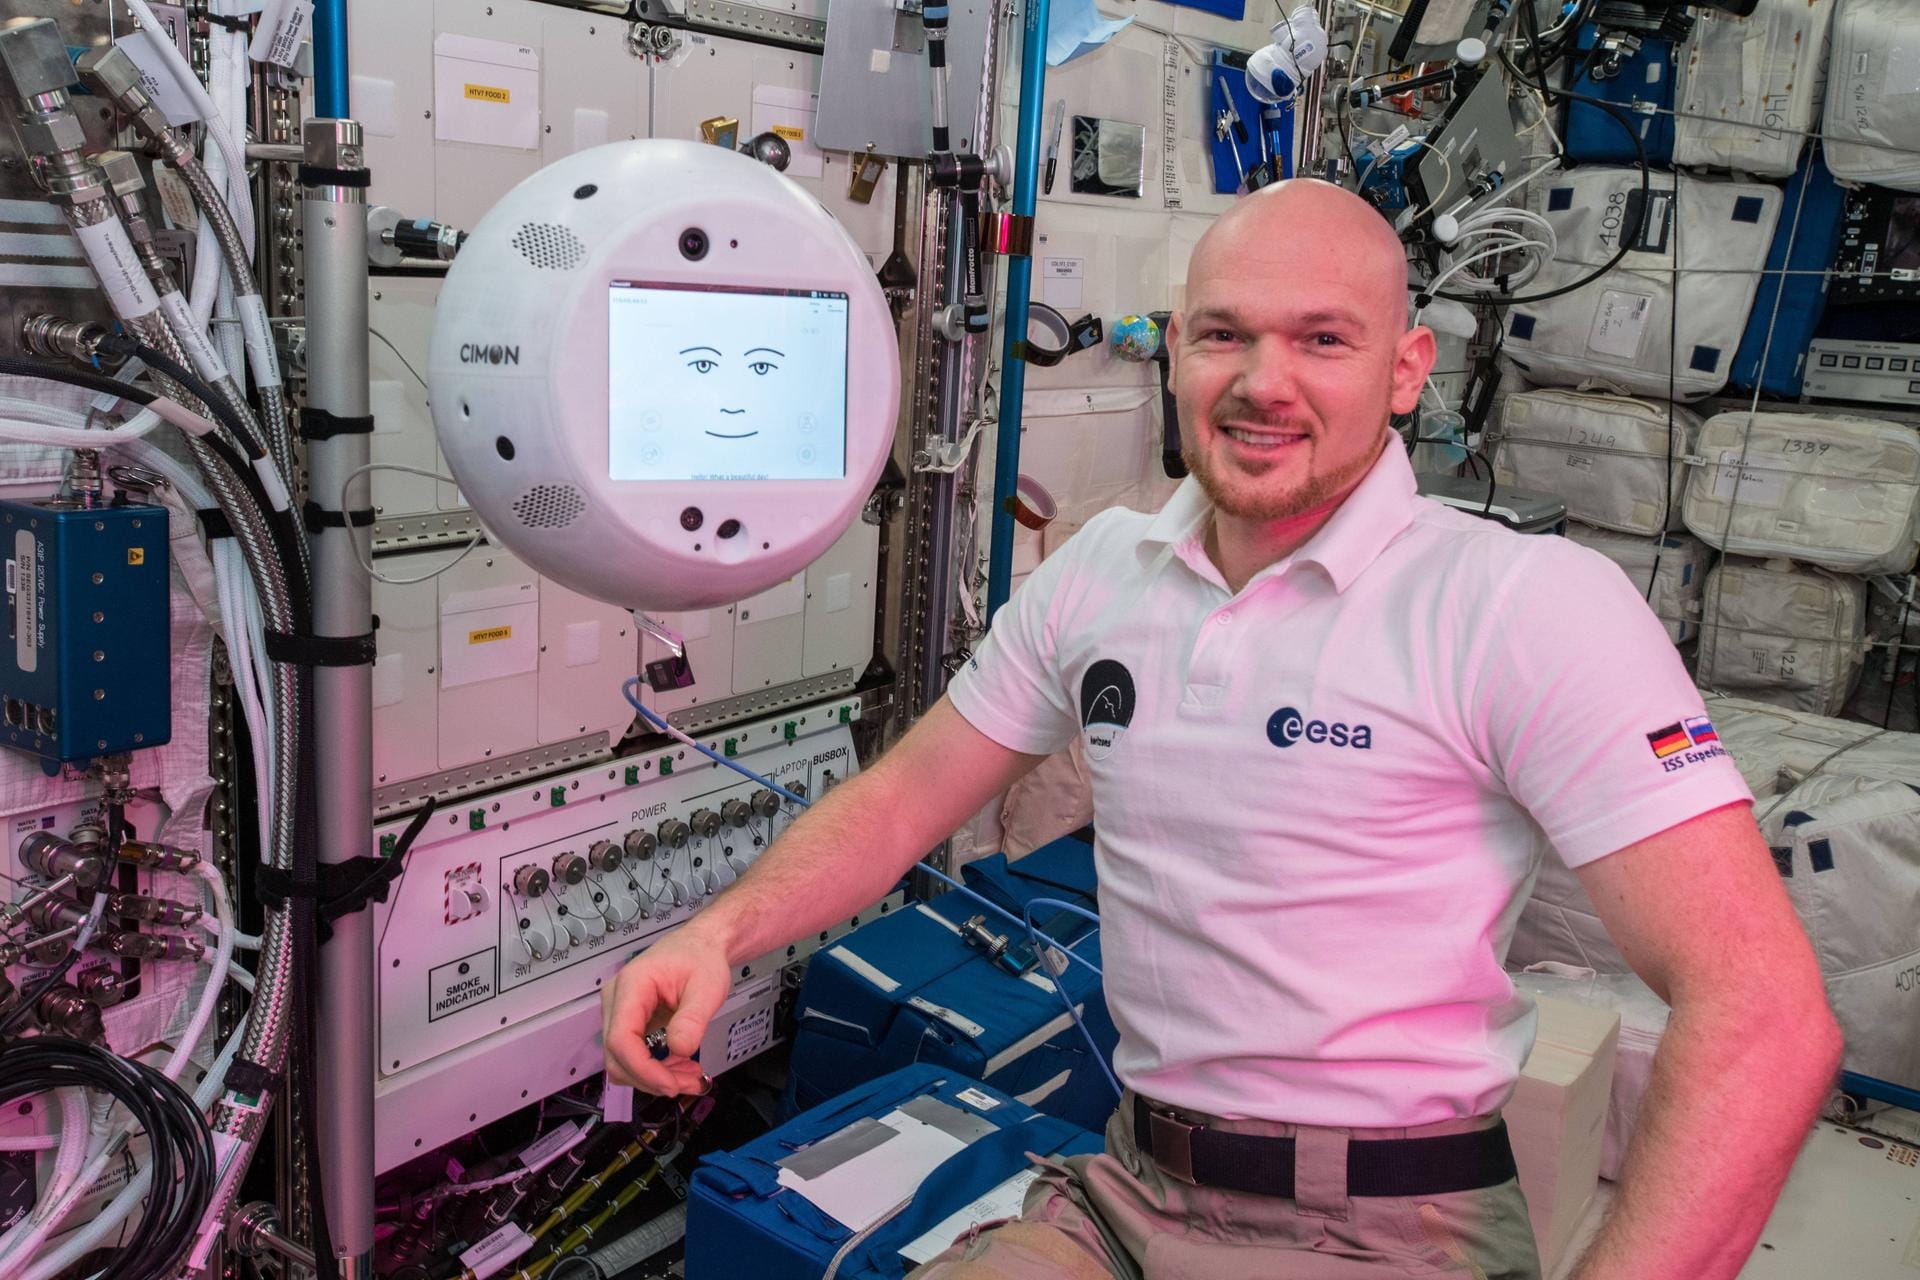 Trotz der harten Arbeit trifft man auf freundliche Gesichter: Alexander Gerst begrüßt den Neuzugang Cimon – kurz für Crew Interactive Mobile CompanioN. Die Roboter-Kugel soll die Astronauten auf der ISS unterstützen.